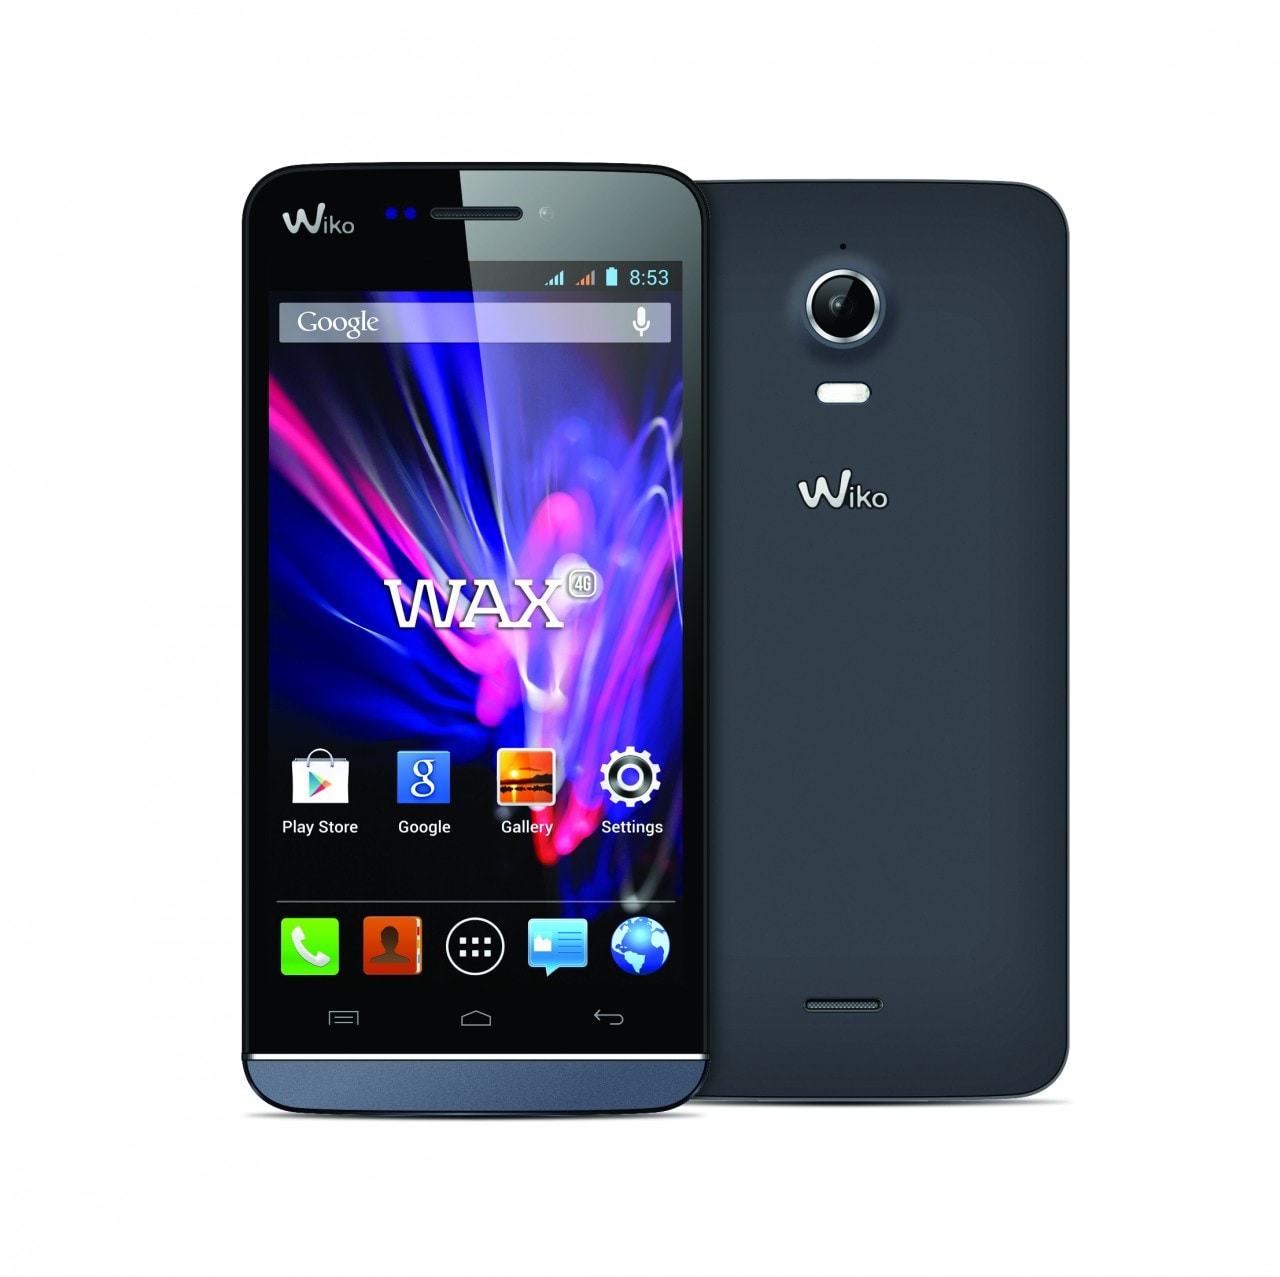 Wiko annuncia l'arrivo in Italia di 3 nuovi smartphone: Wax, Rainbow e Bloom (foto)